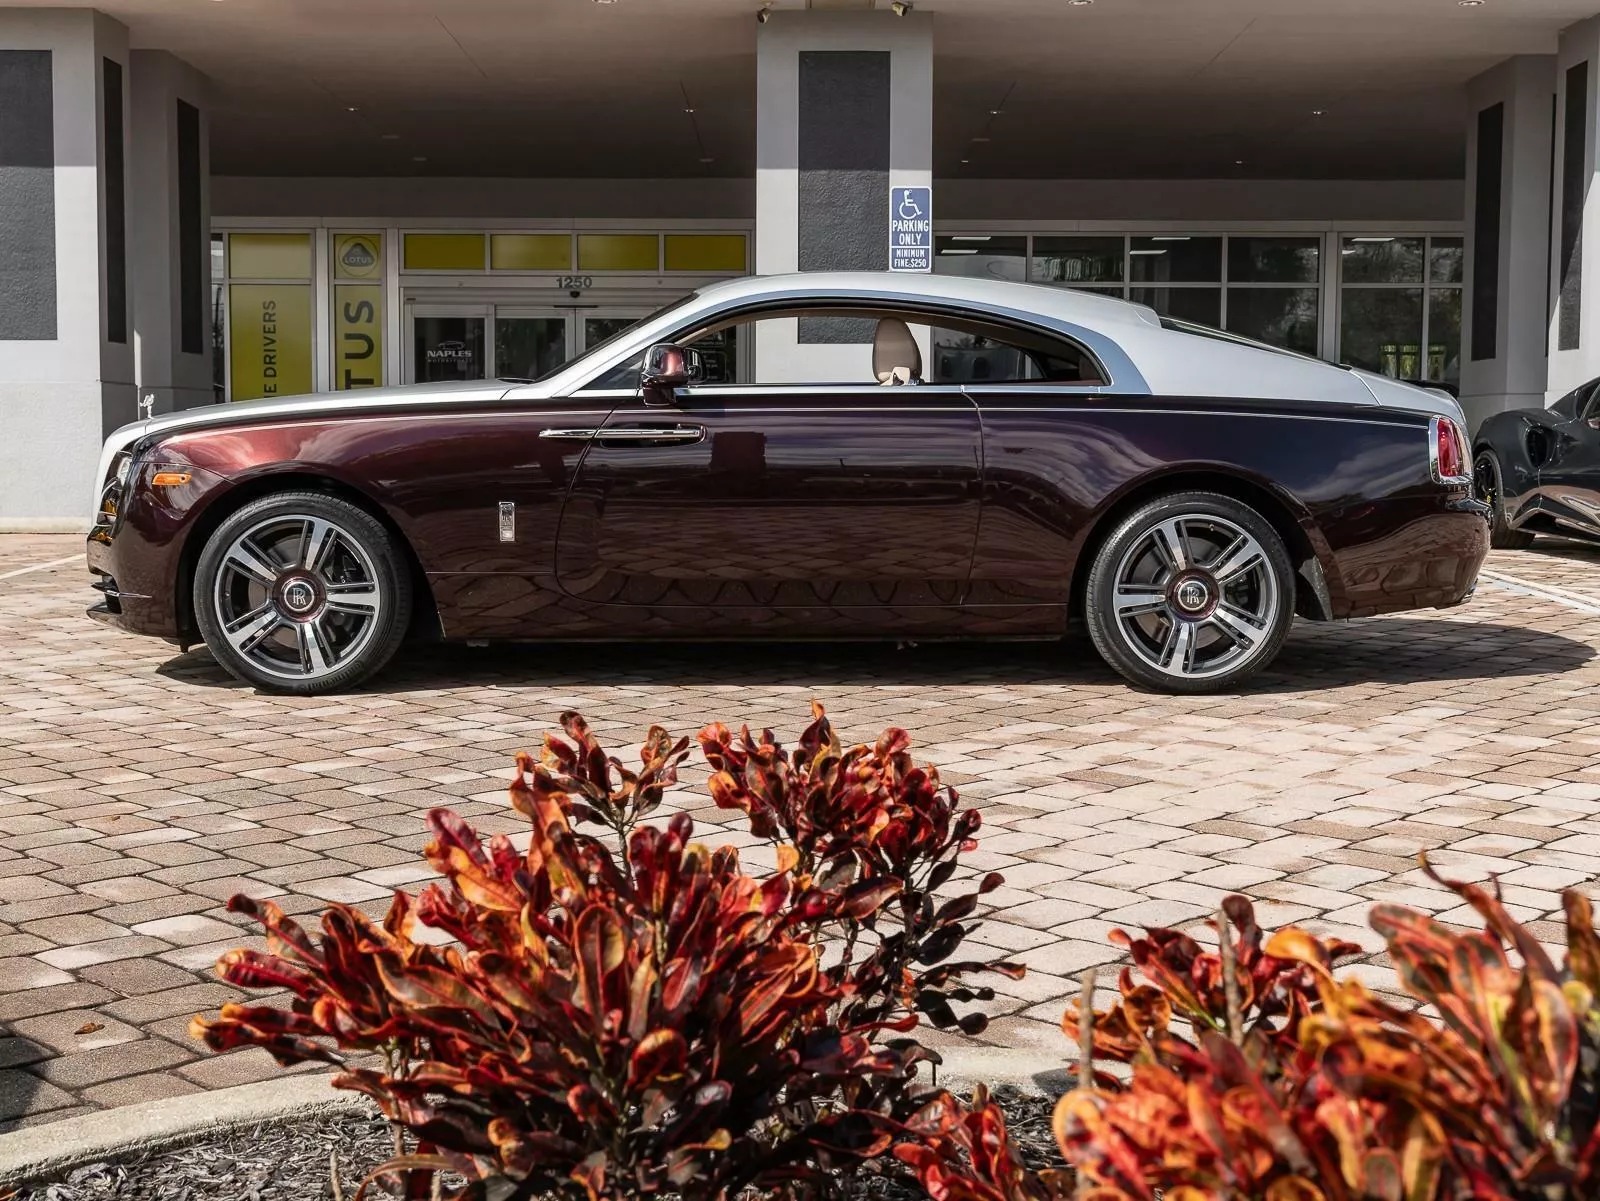 Rao bán Bugatti Chiron giá quy đổi hơn 95 tỷ đồng, chủ xe hứa tặng kèm Rolls-Royce Wraith hợp tông màu- Ảnh 8.